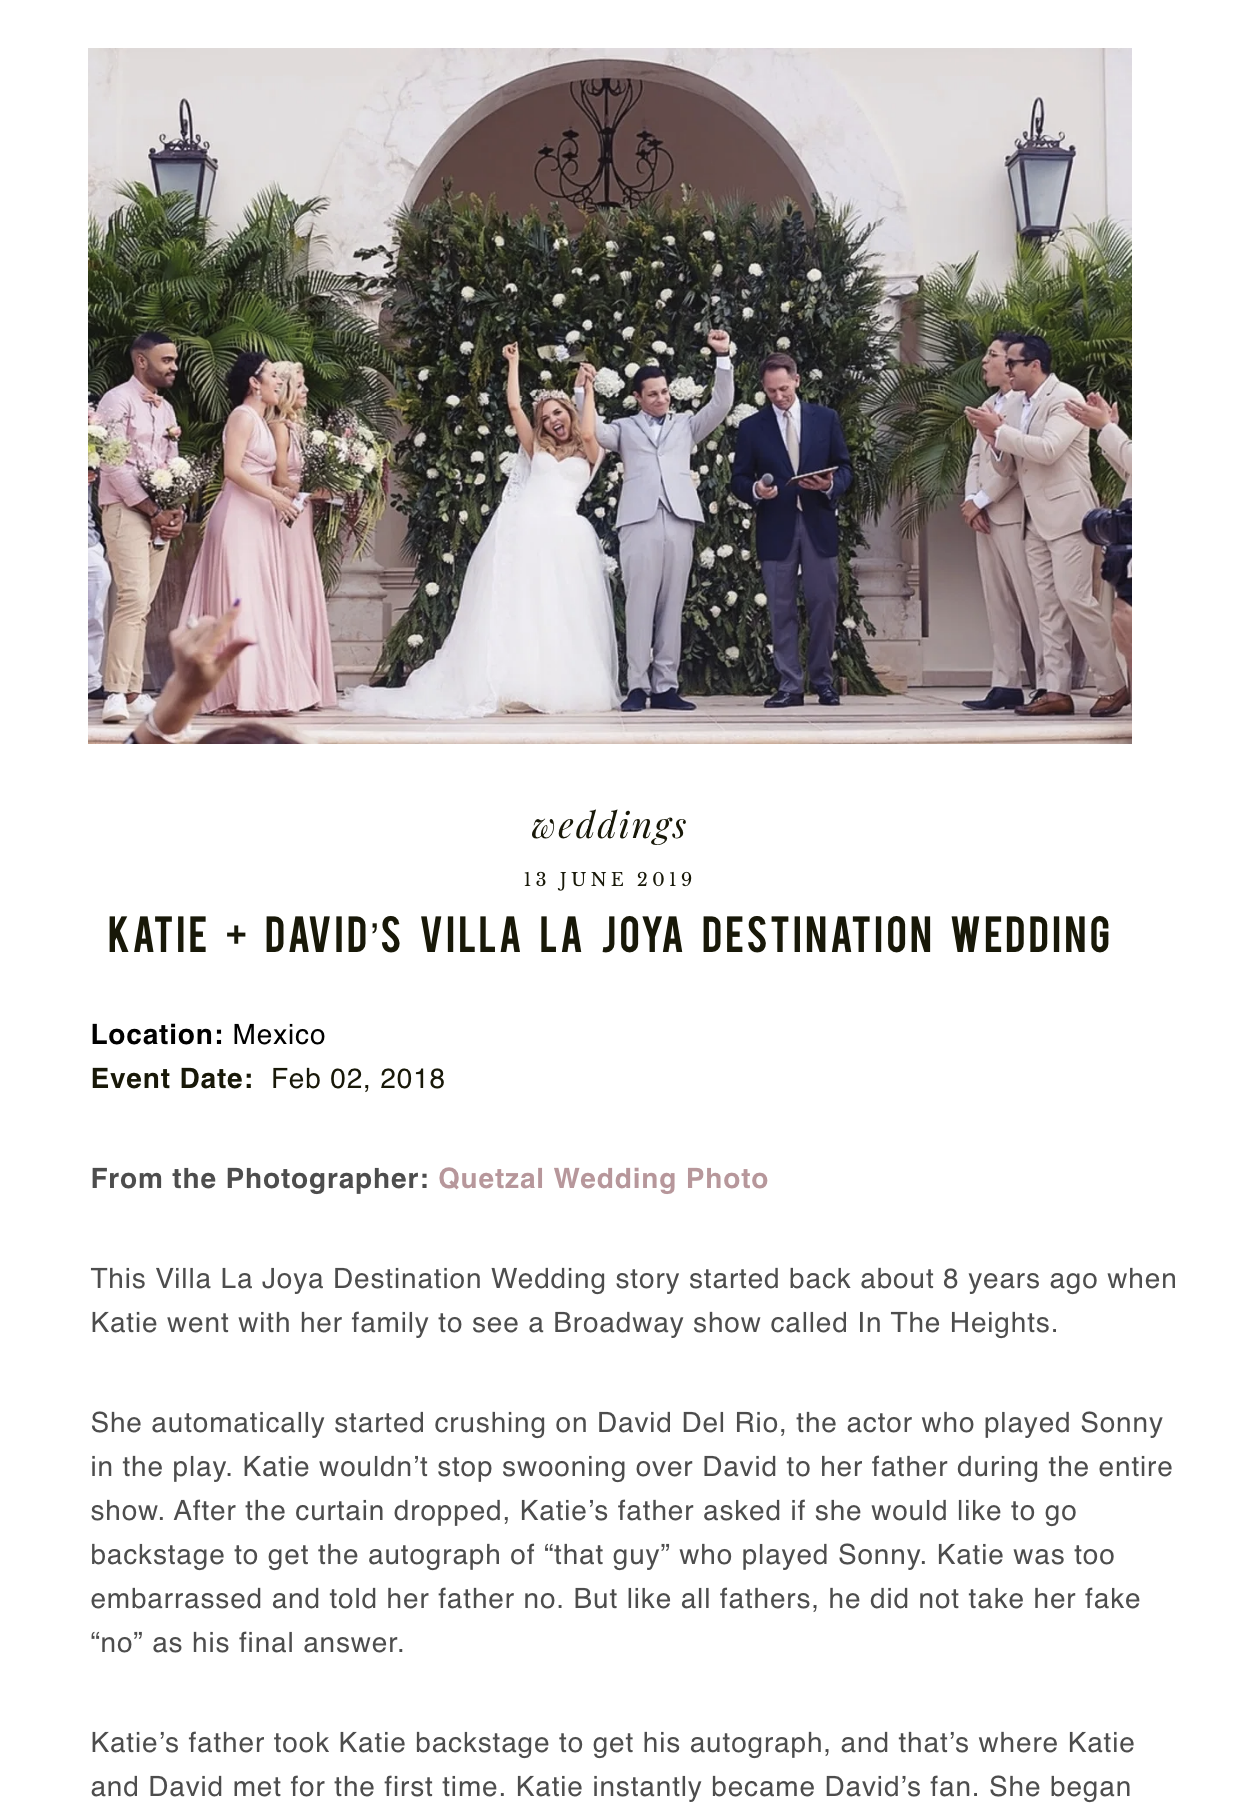 KATIE + DAVID’S VILLA LA JOYA DESTINATION WEDDING